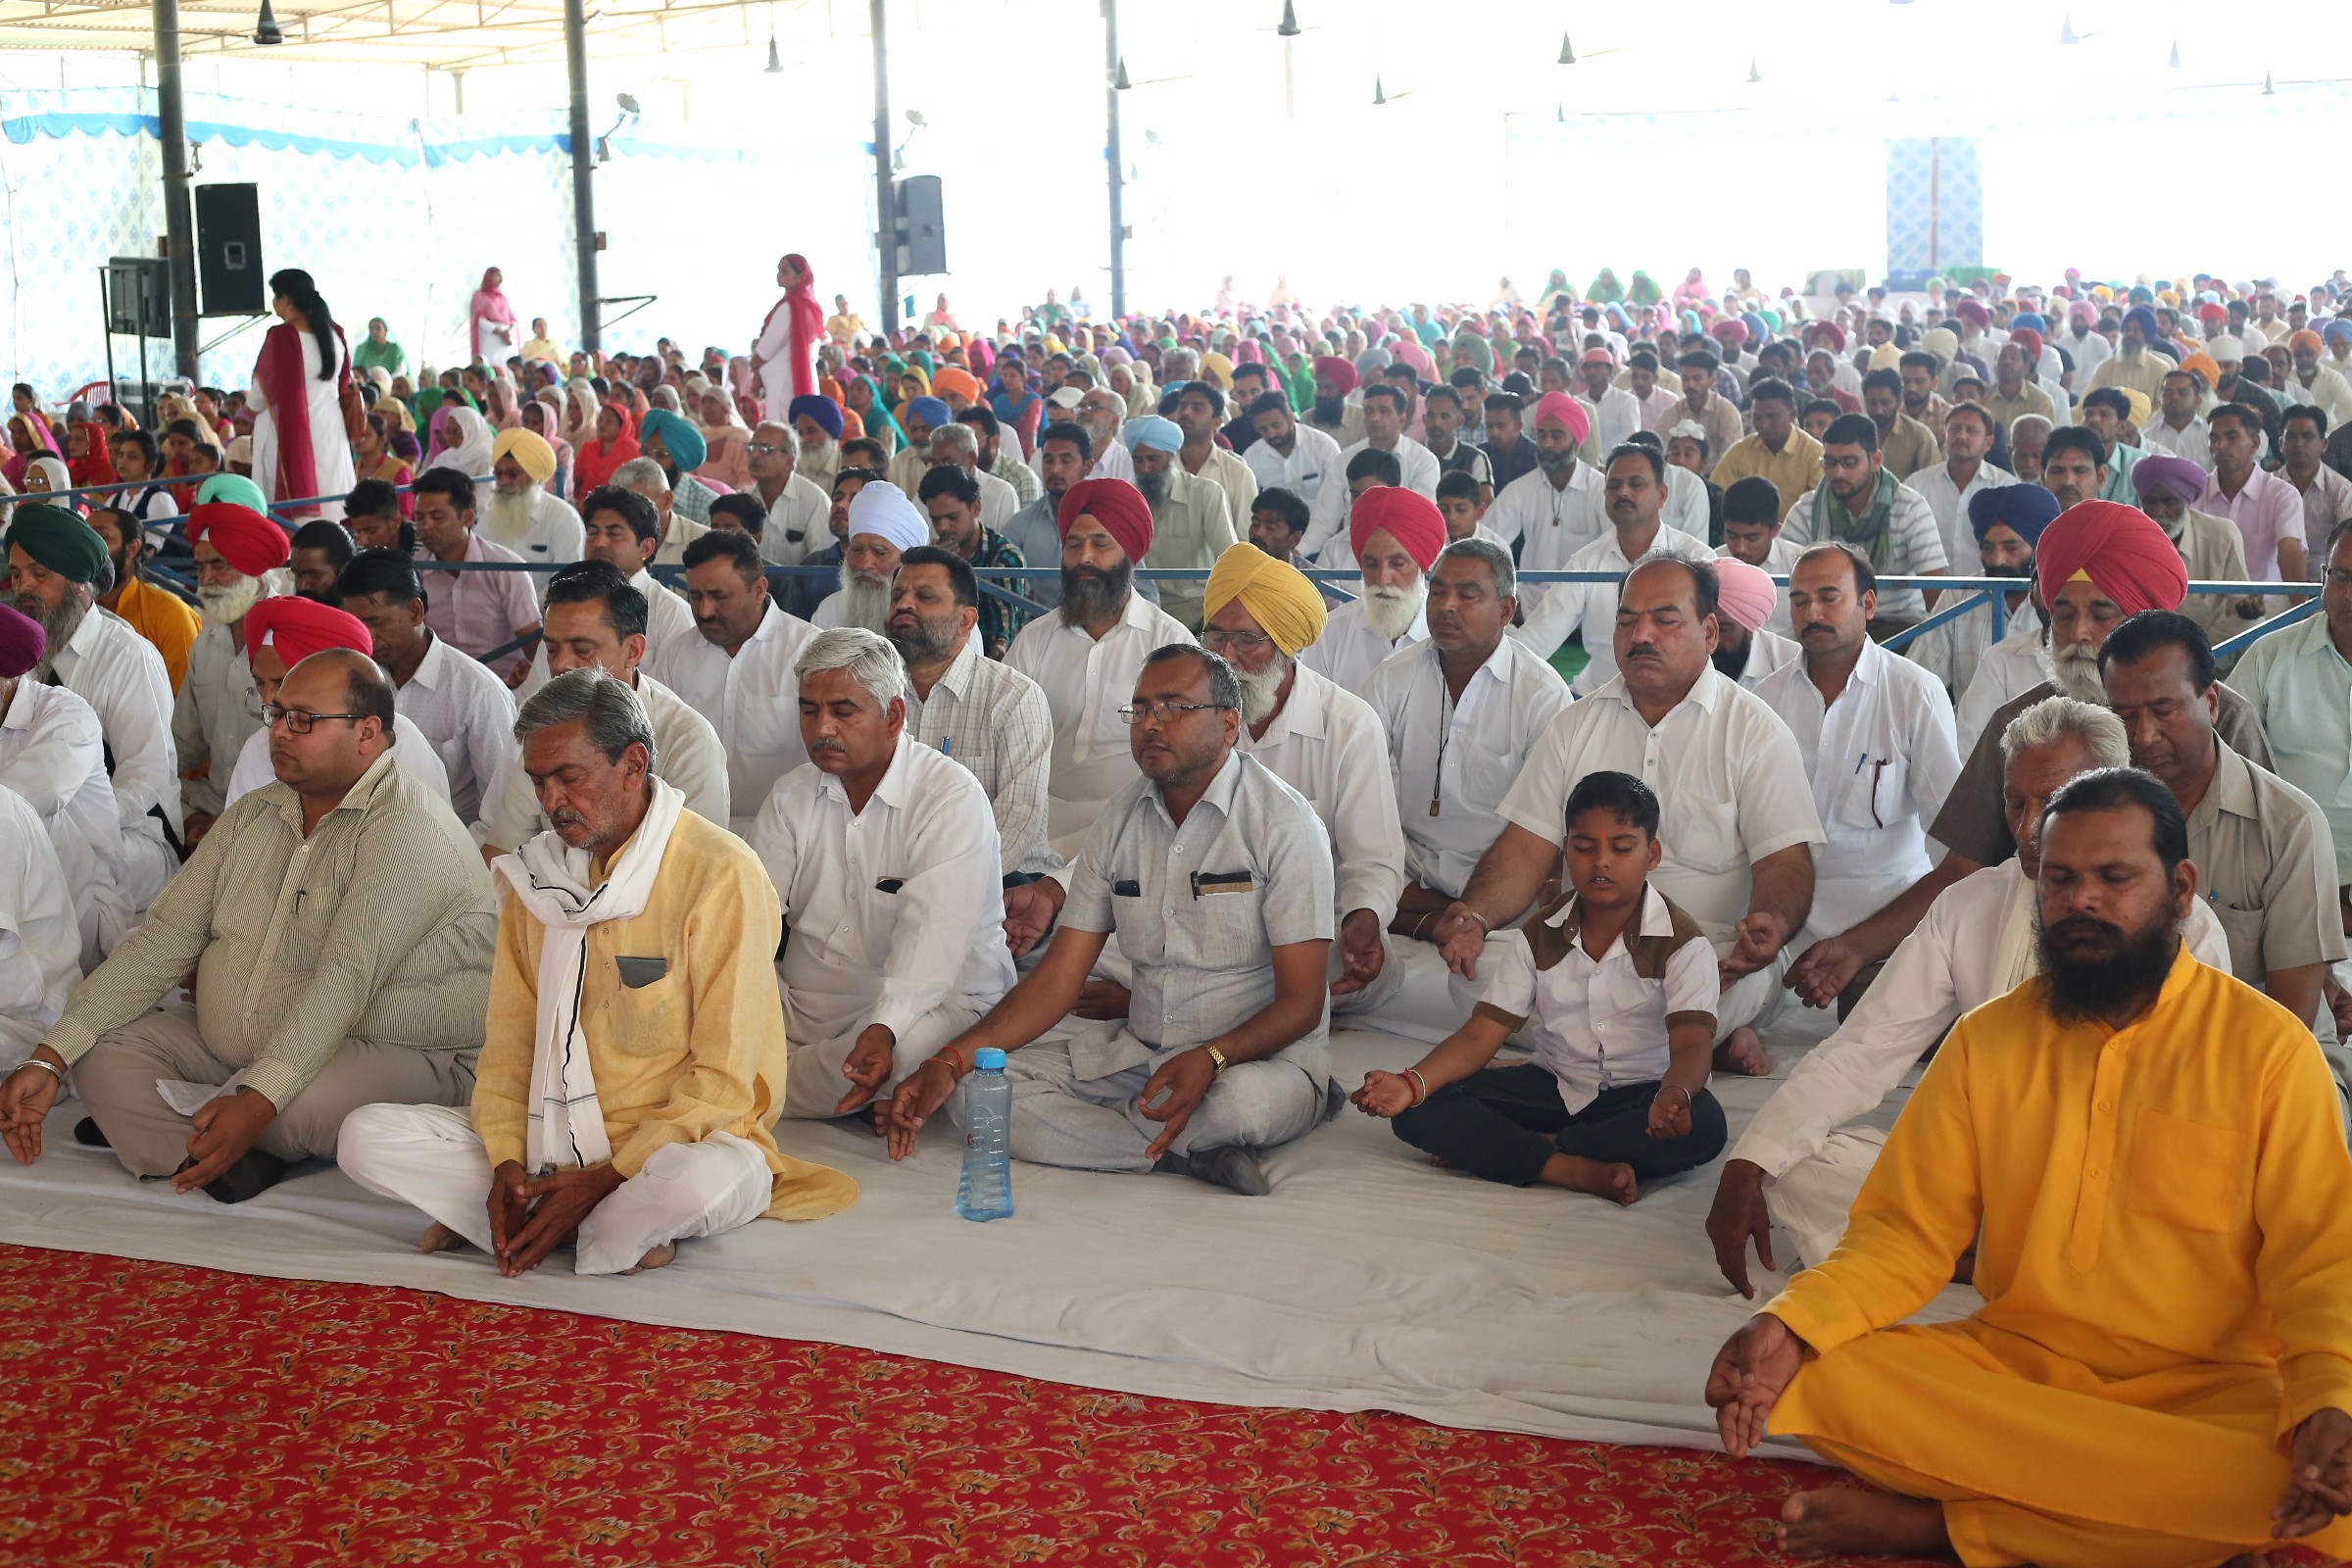 Soul Sanctifying Monthly Spiritual Congregation at Dabwali Malko Ki, Punjab